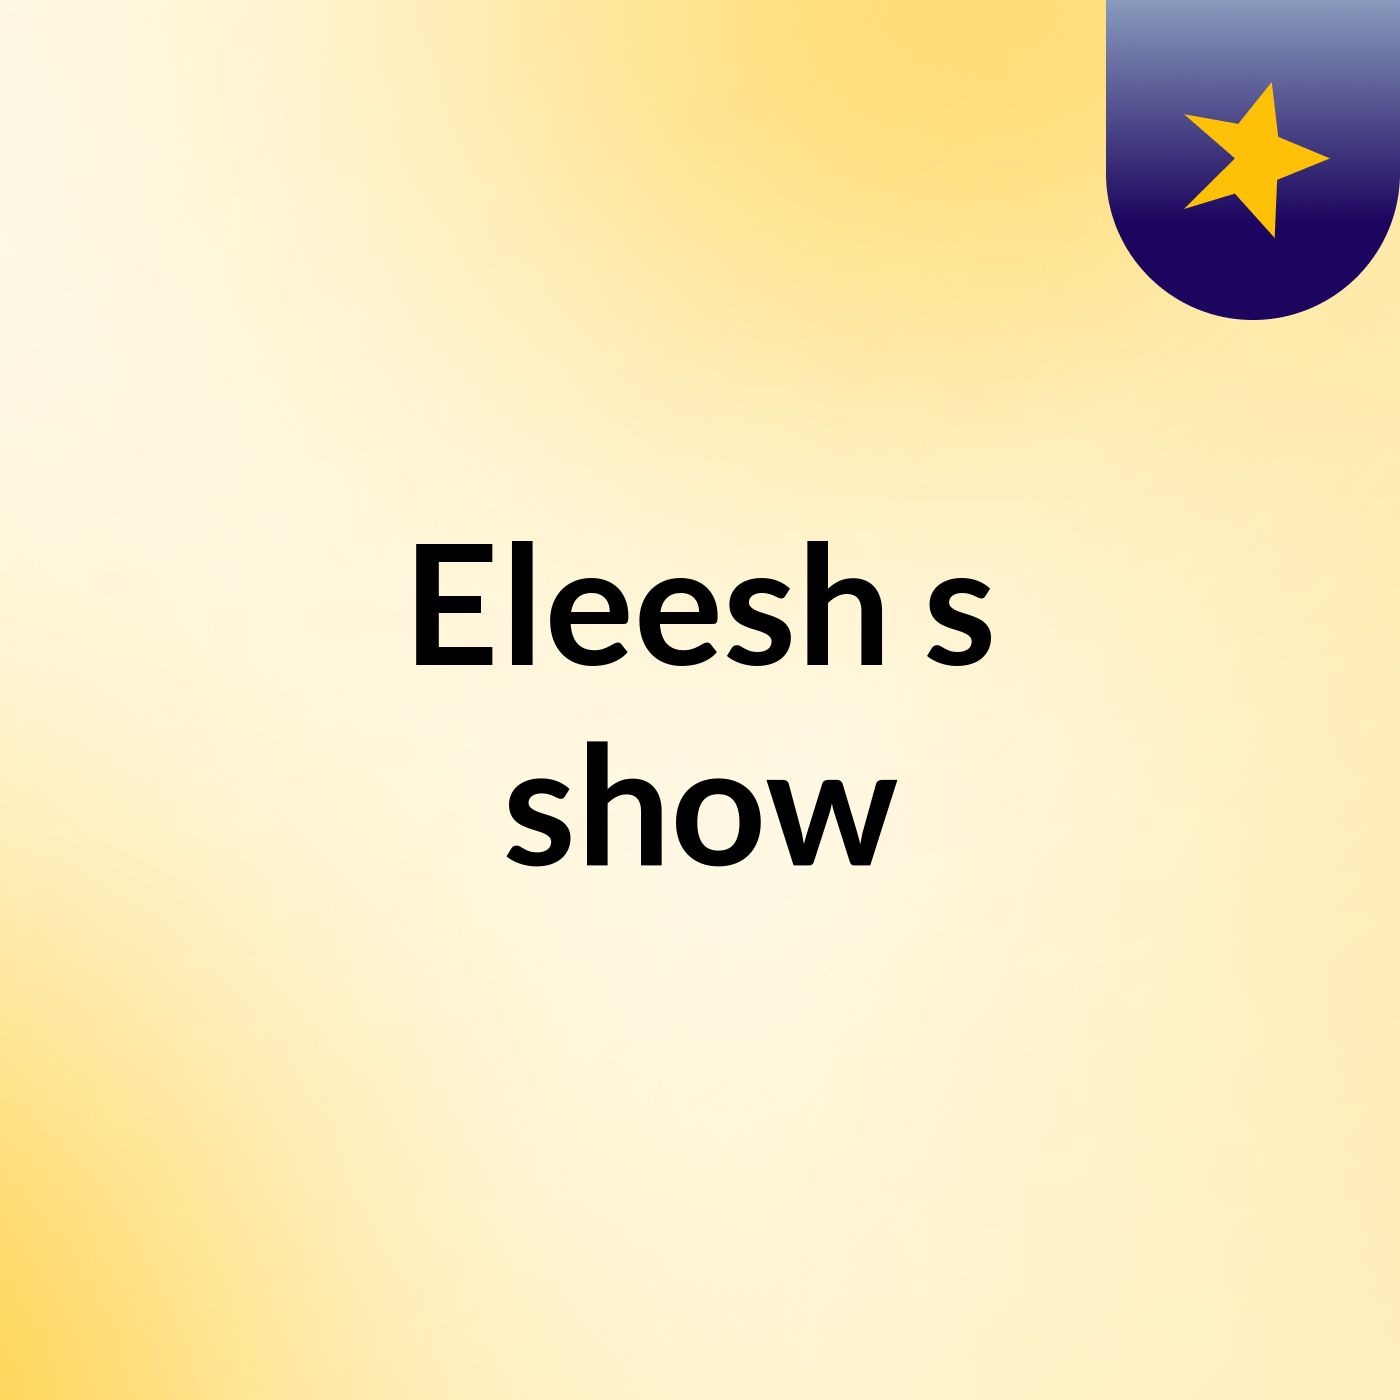 Eleesh's show